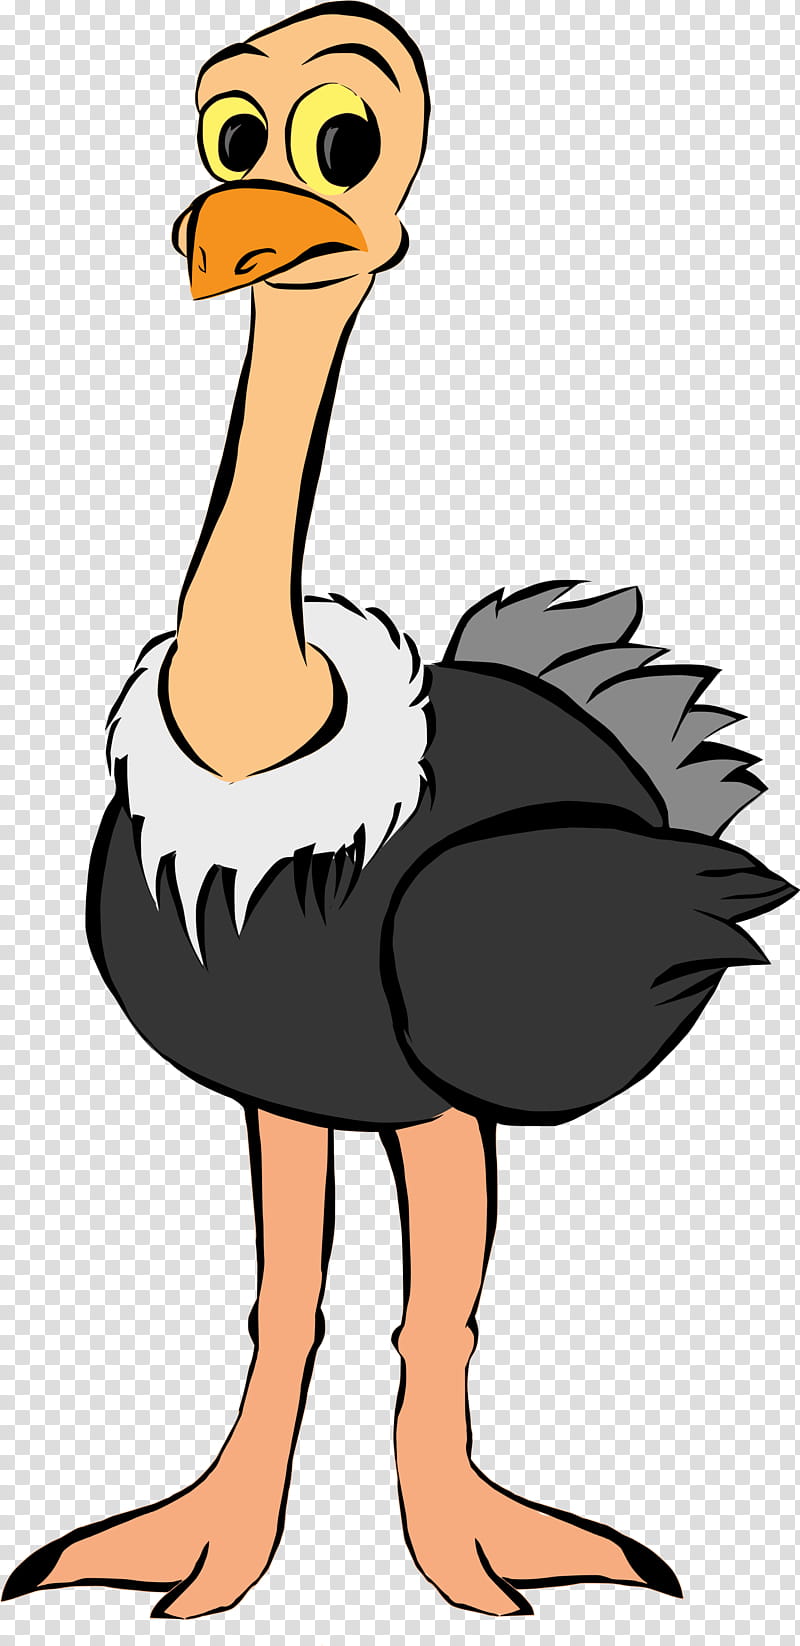 Bird Silhouette, Common Ostrich, Emu, Drawing, Ratite, Flightless Bird, Beak, Cartoon transparent background PNG clipart